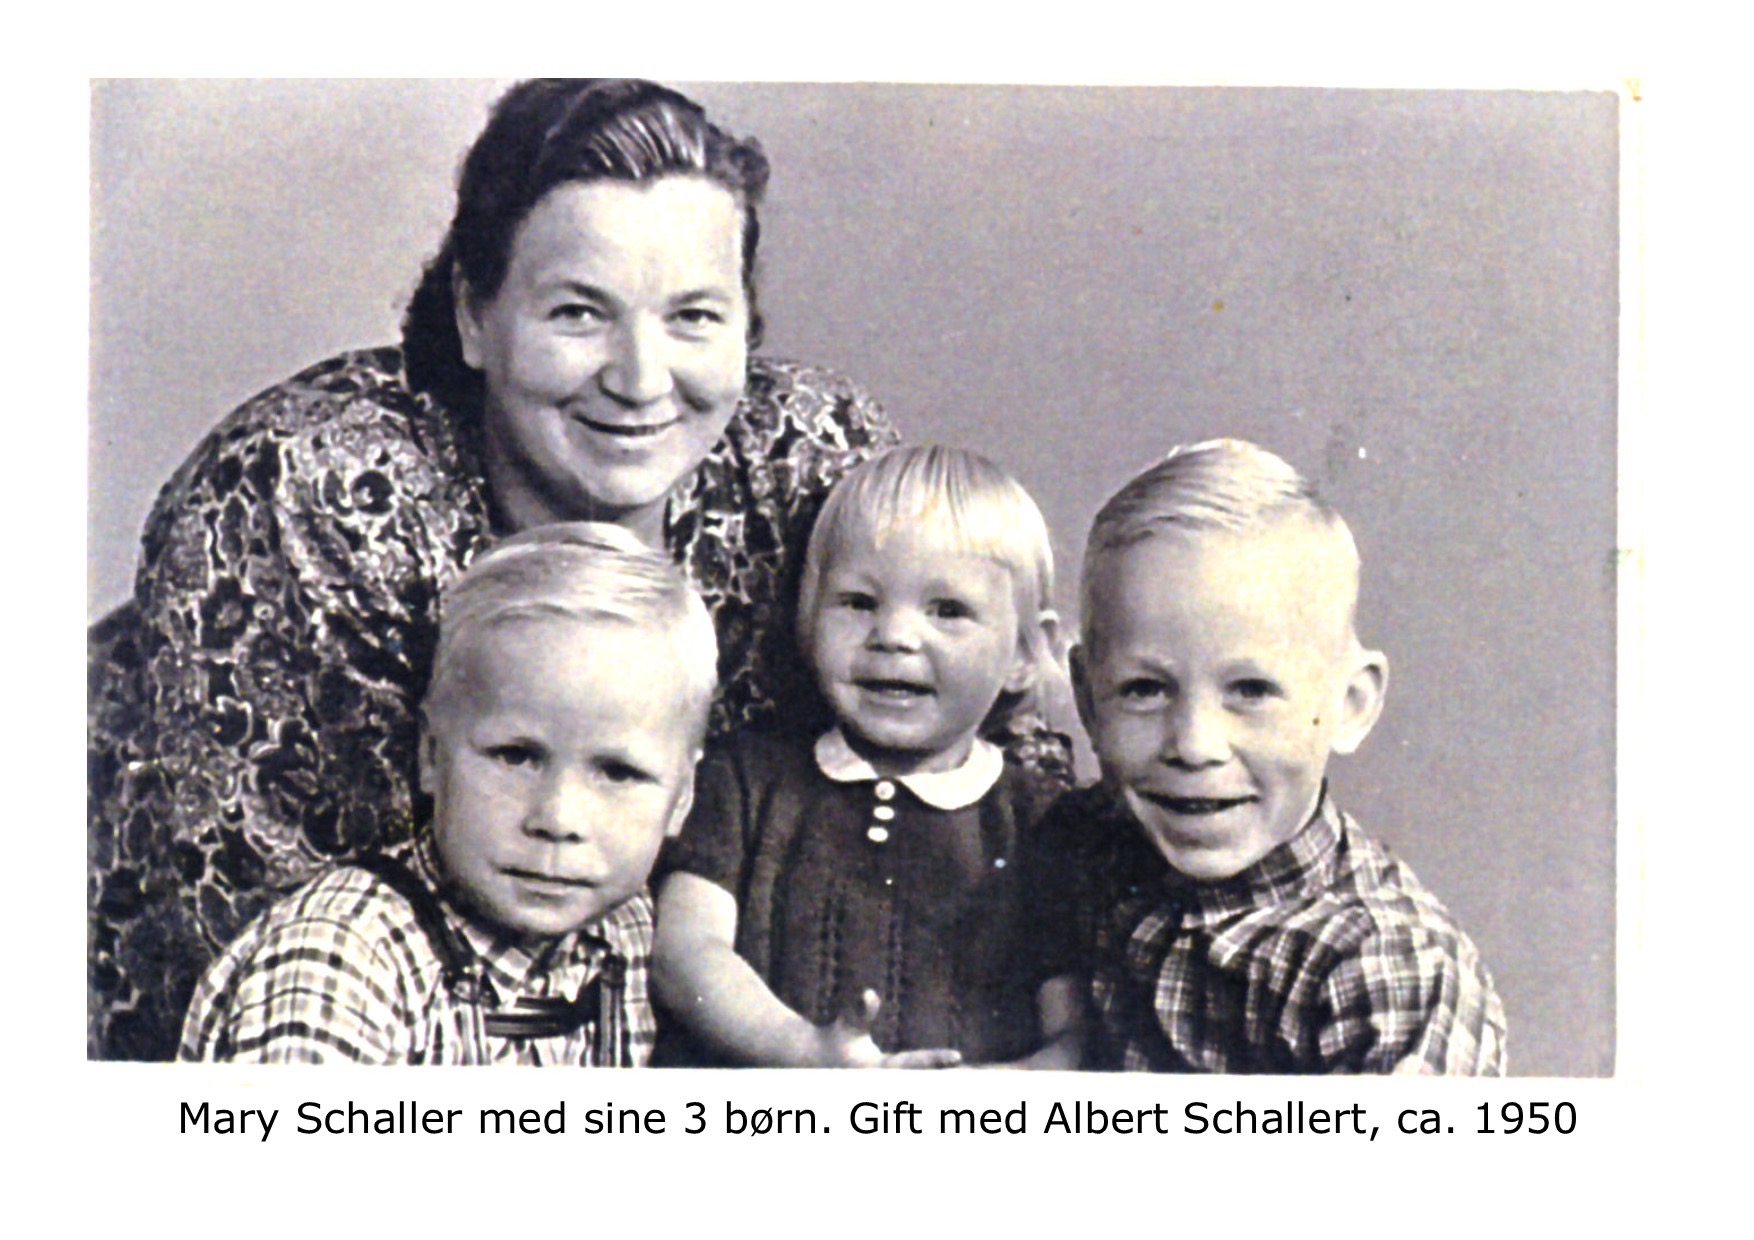 Mary Schallert m 3 børn